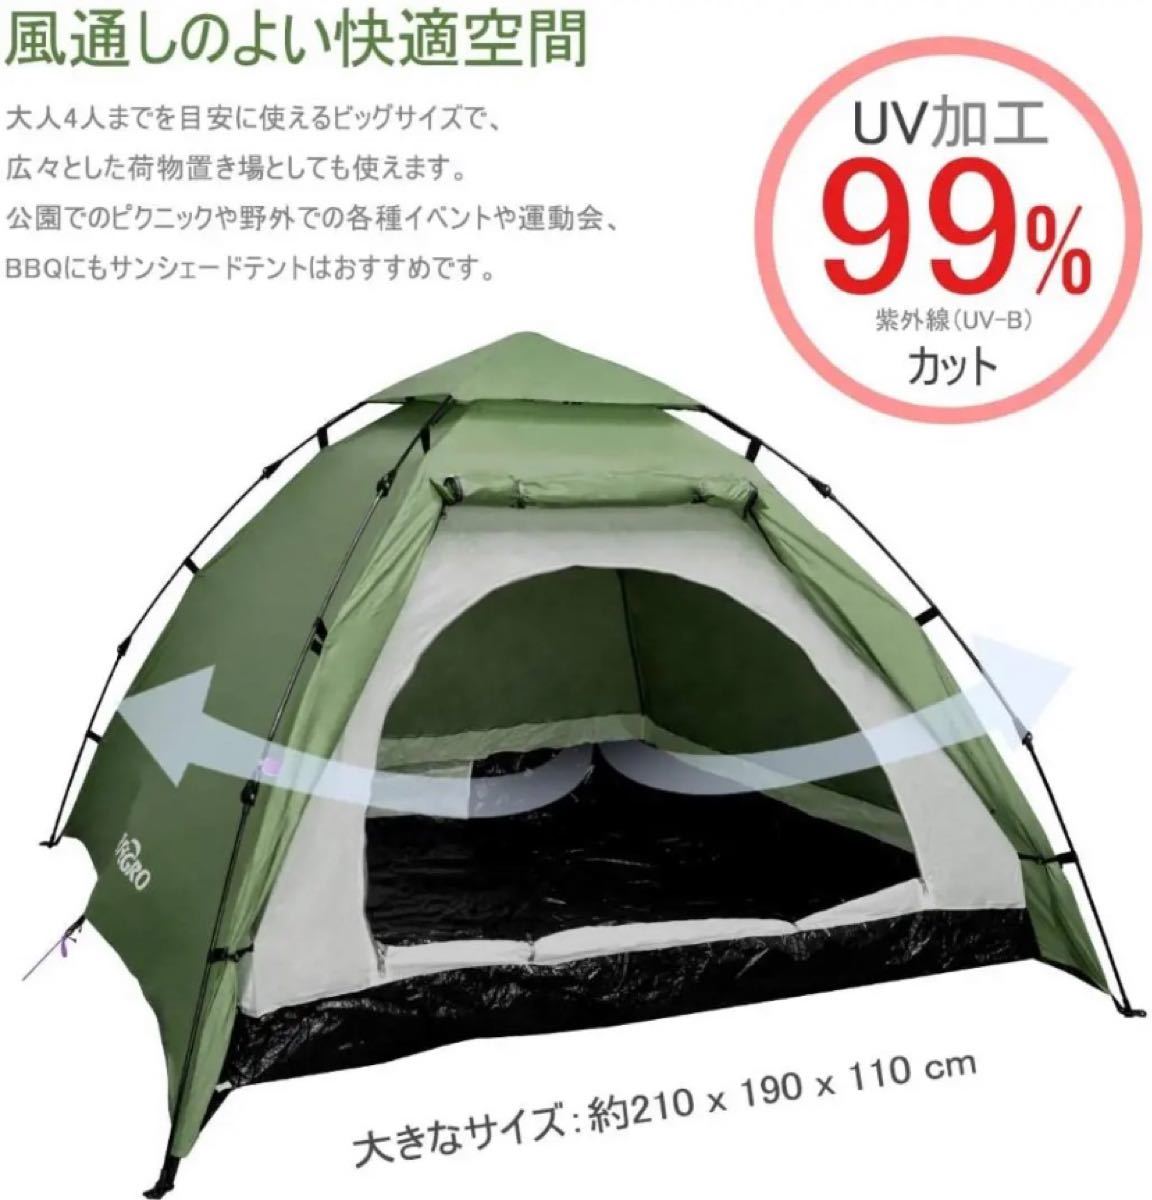 IREGRO キャンプテント ワンタッチ式 2~3人用 サンシェードテント